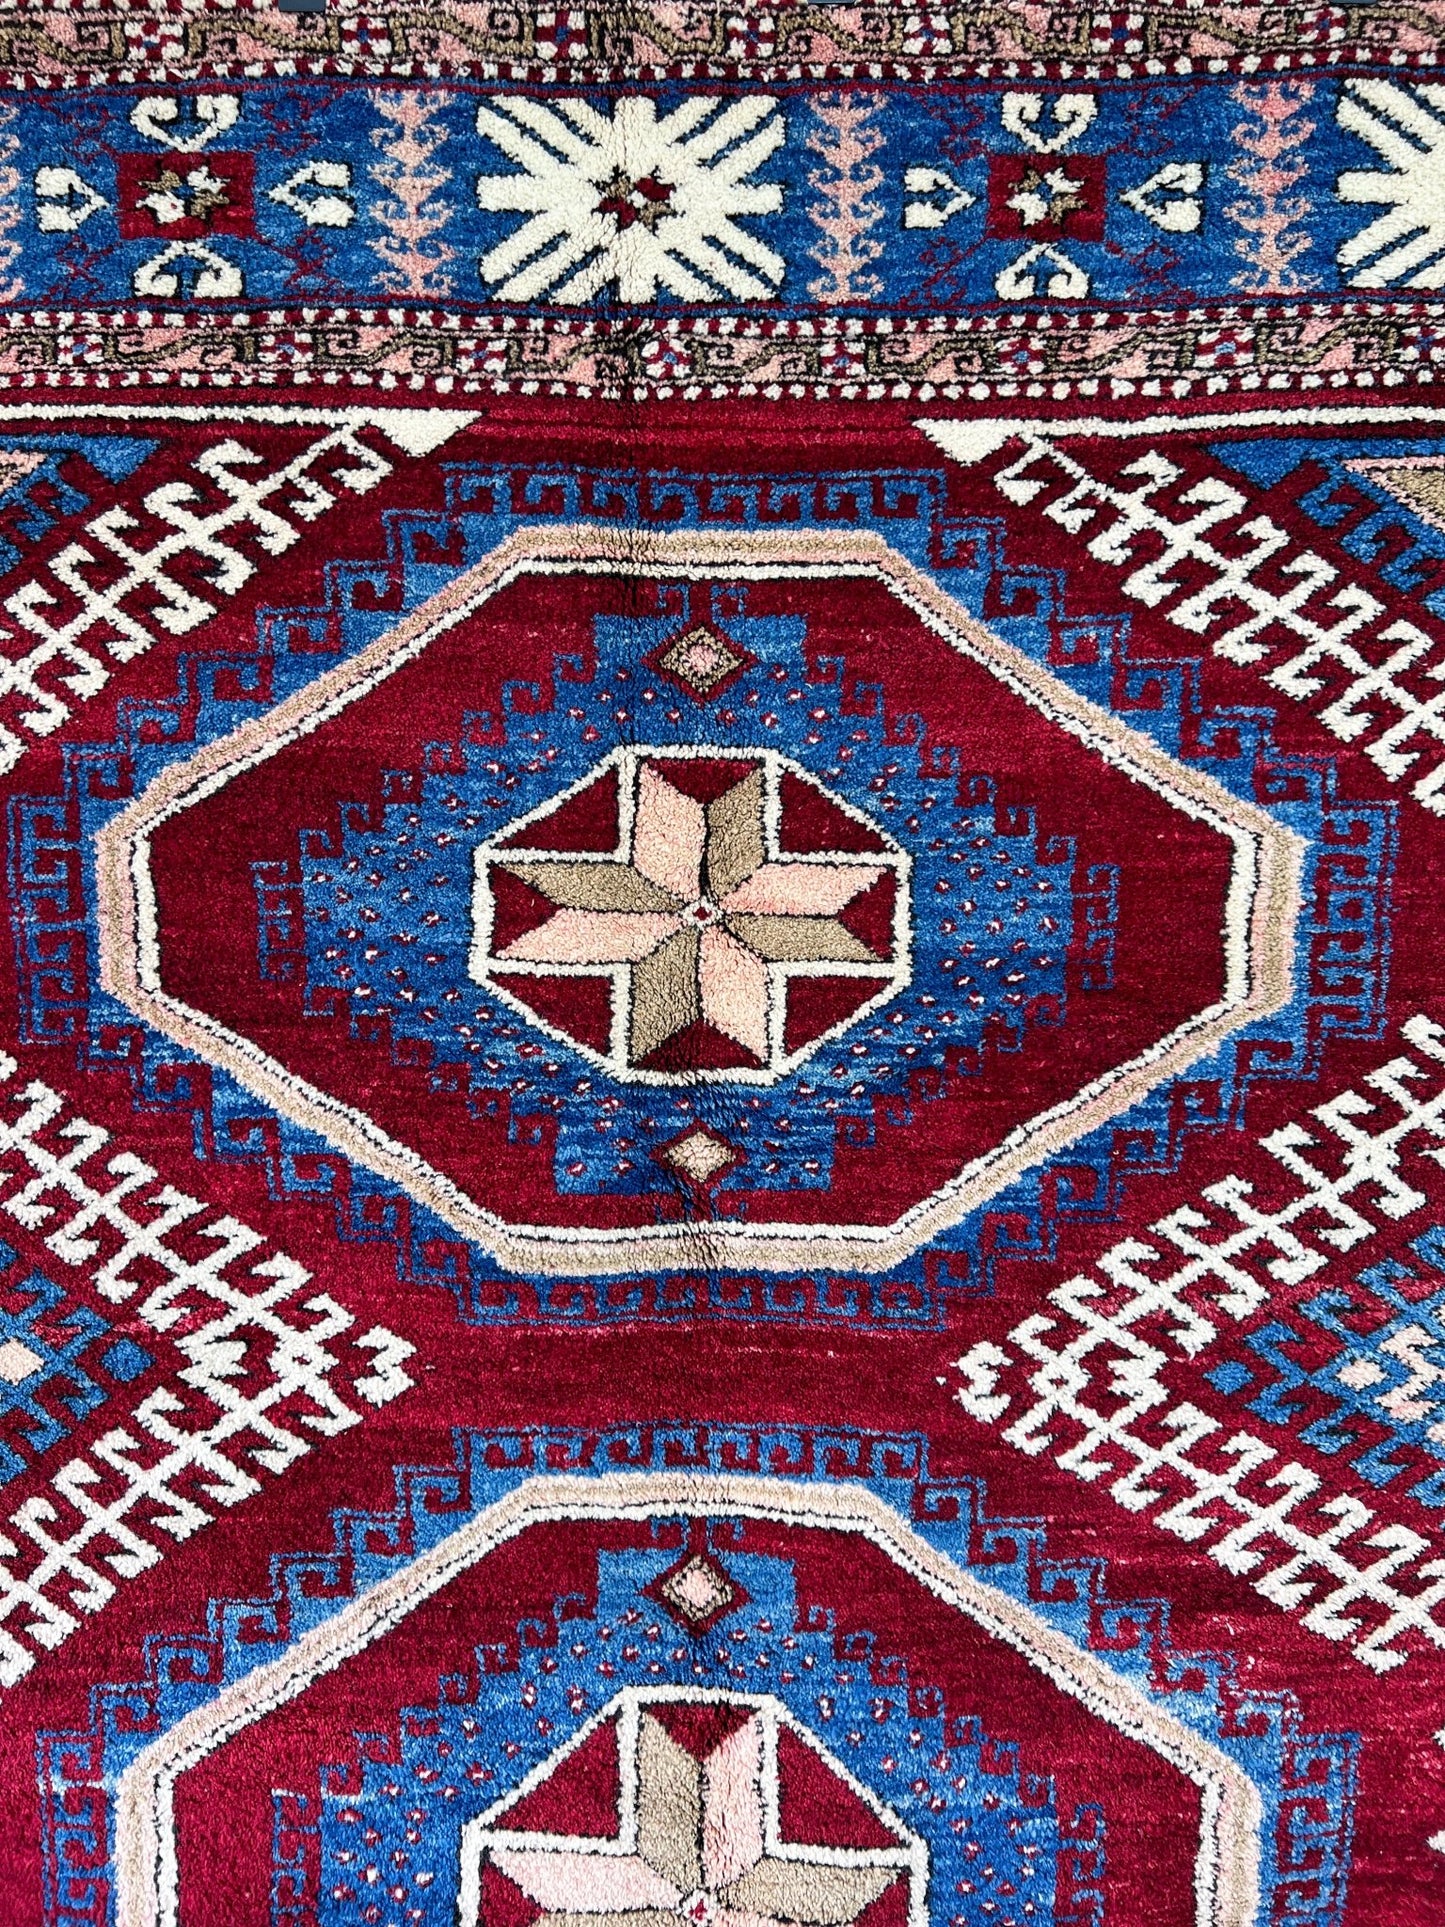 Dazkiri large turkish rug shop san francisco bay area. Wool handmade rug shop.